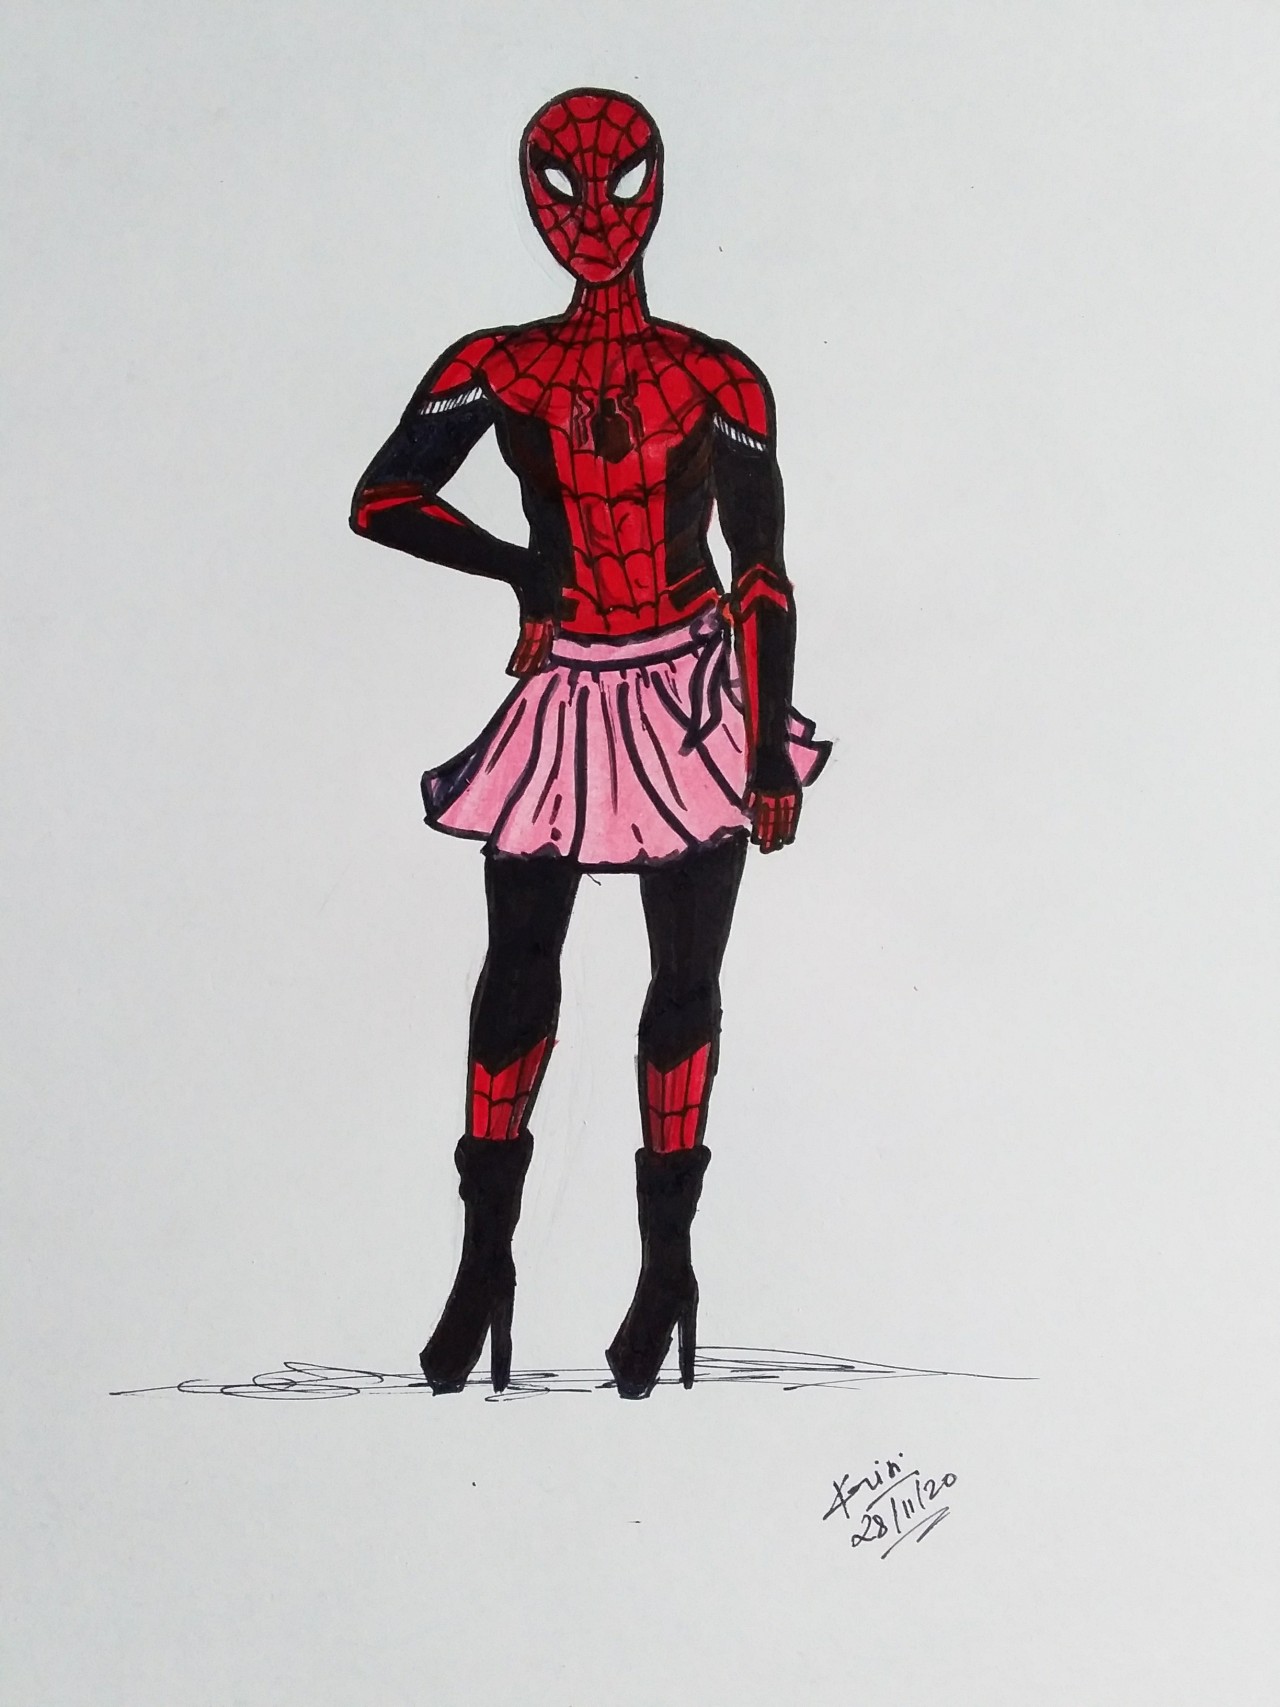 spidermanxstarkreader on tumblr